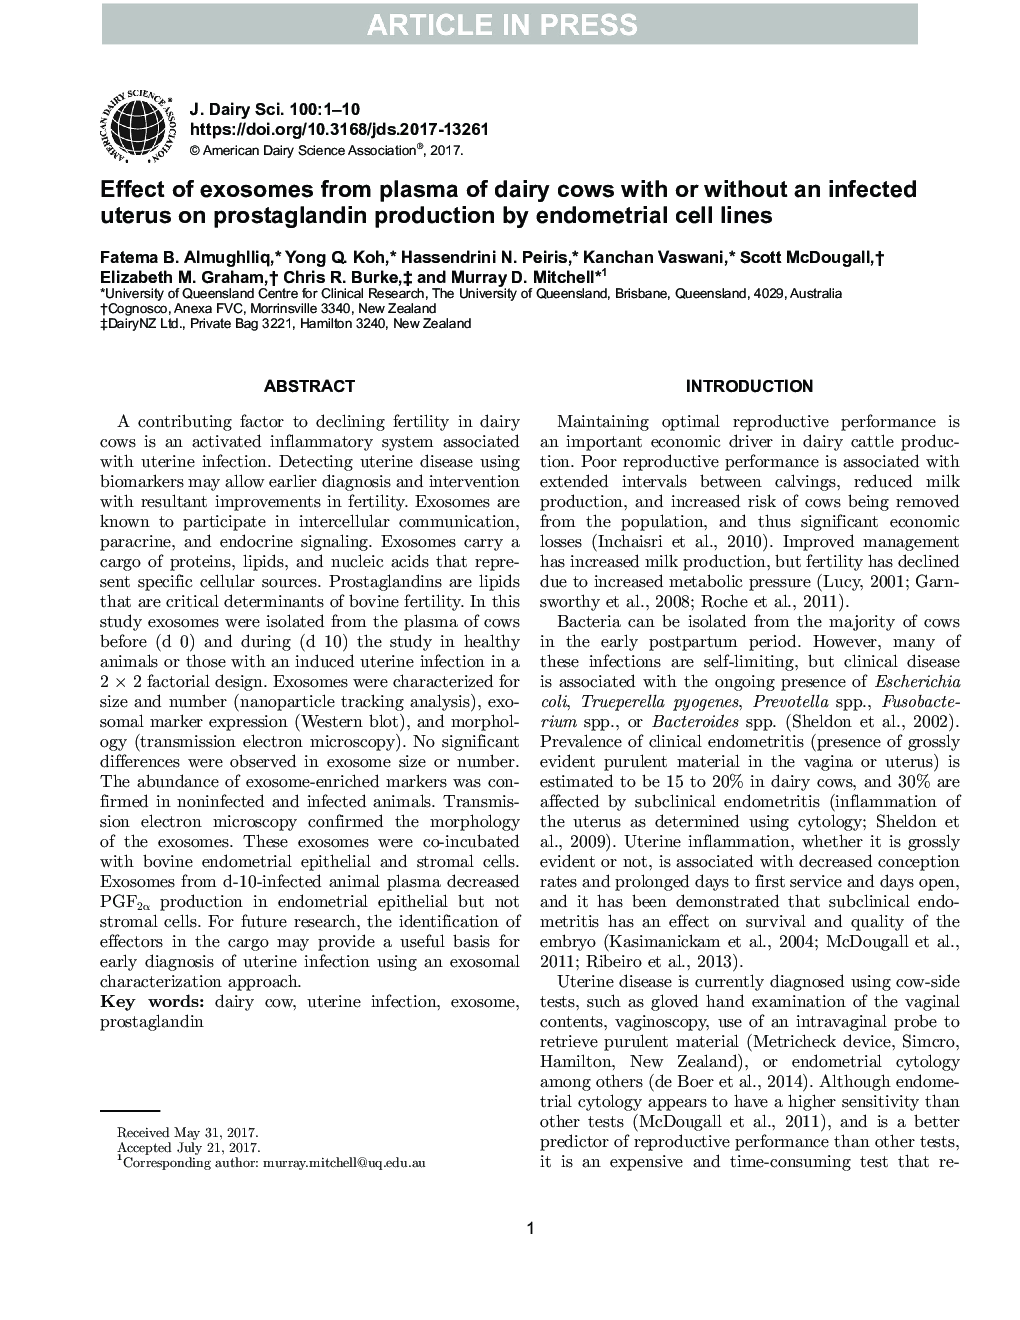 اثر اکوسوم ها از پلاسمای گاو های شیری با یا بدون رحم آلوده بر تولید پروستاگلاندین توسط سلول های اندومتر 